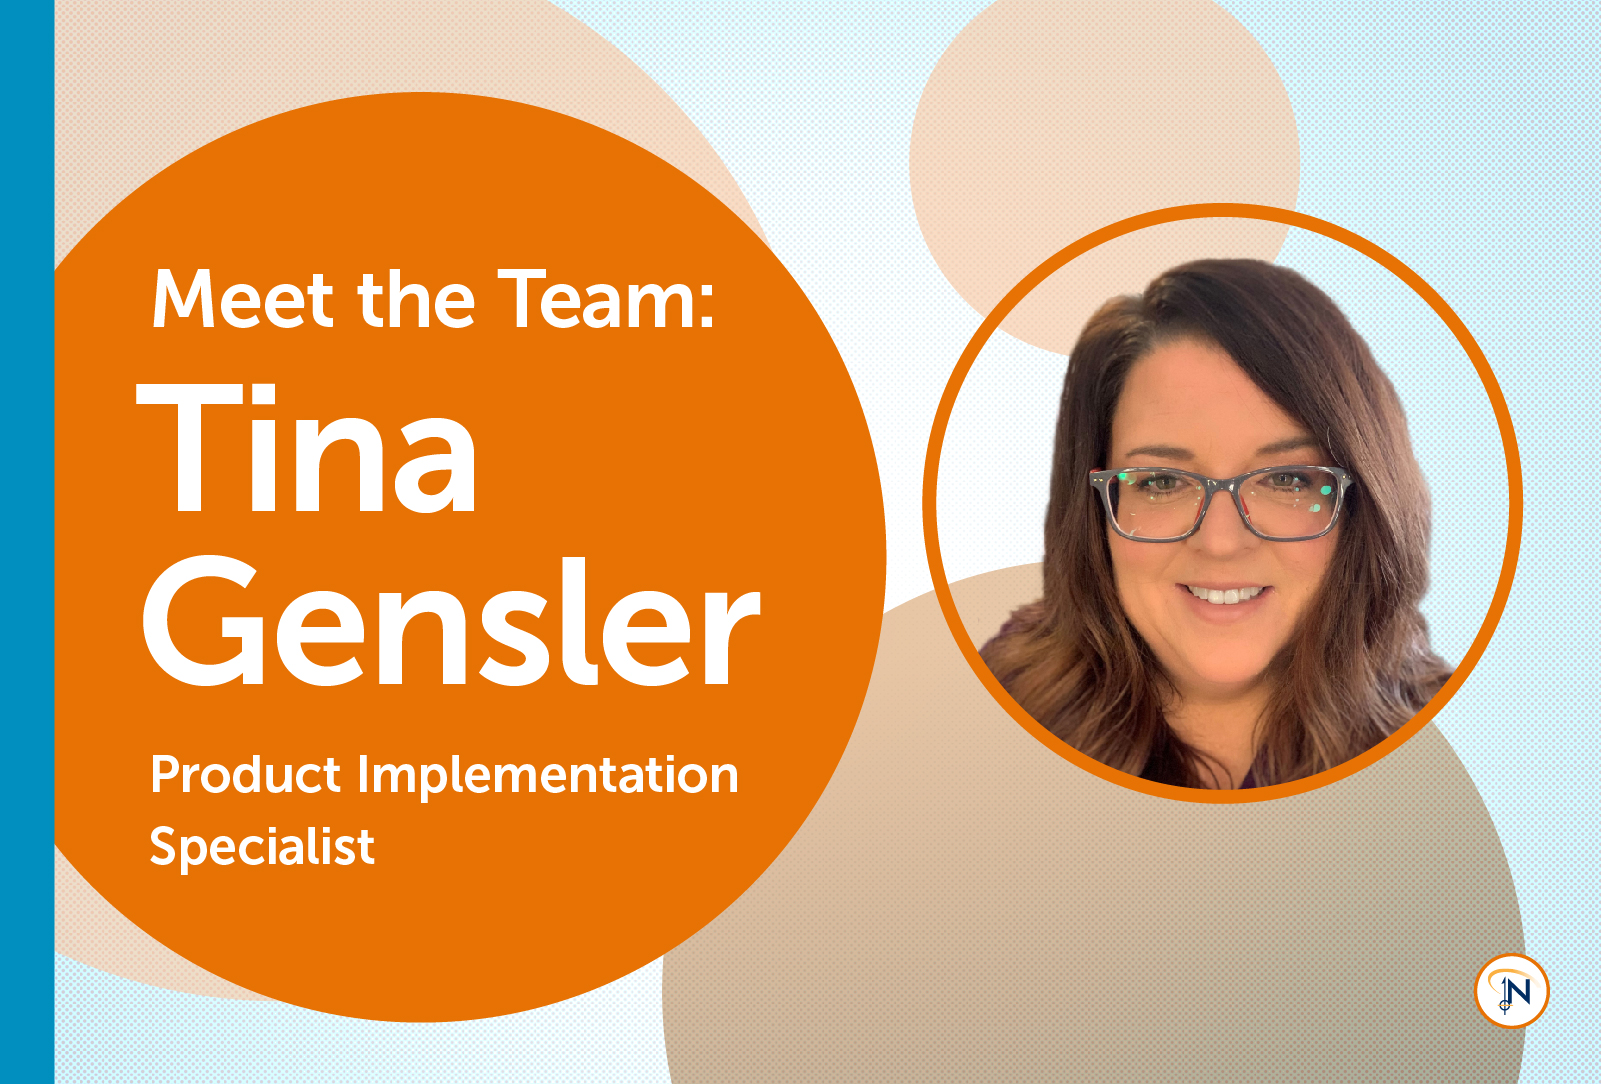 Meet the Team: Tina Gensler